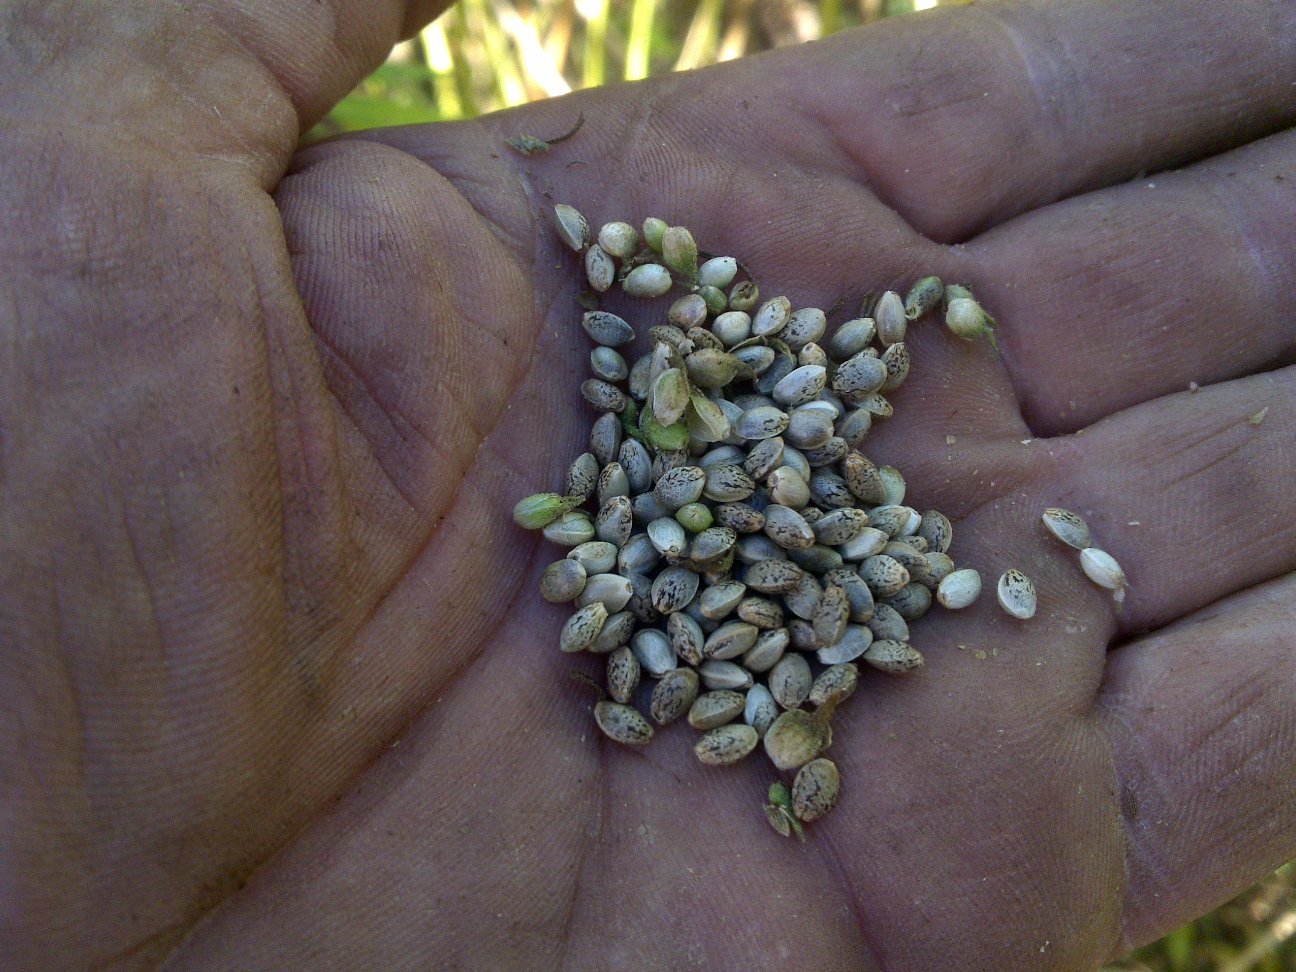 Топ-5 сильных штаммов от Humboldt Seeds